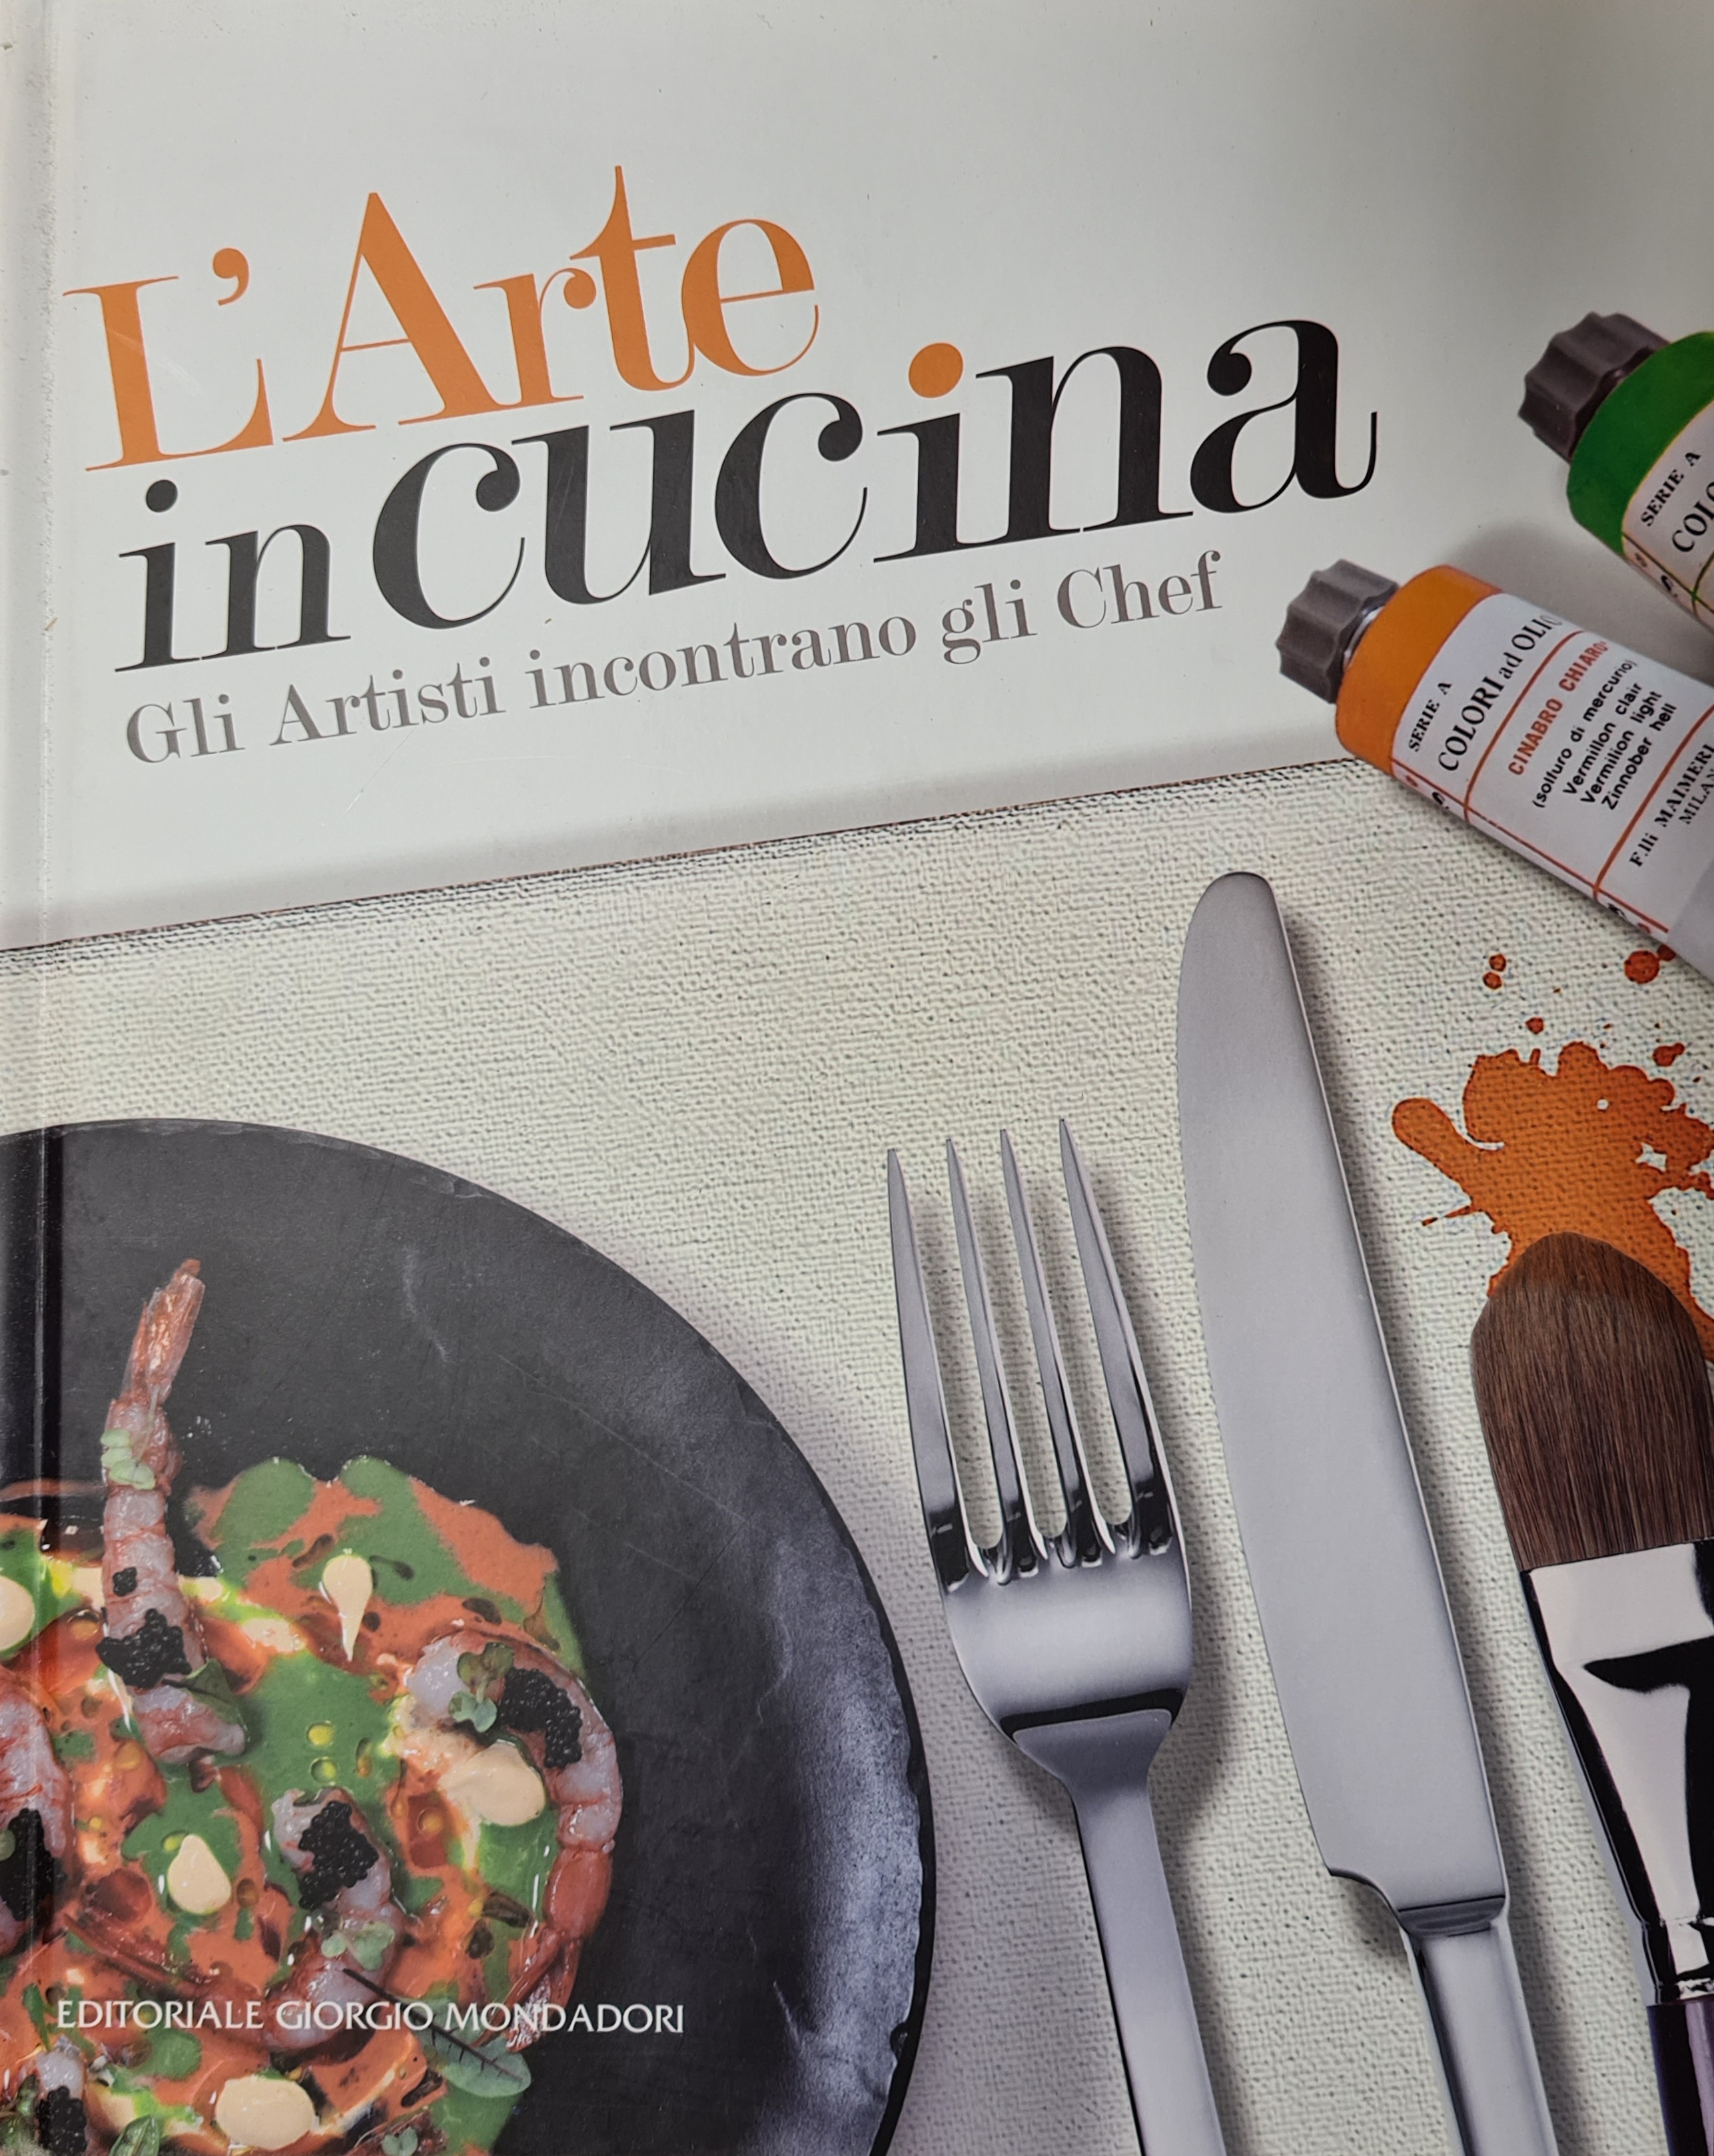 L'arte in cucina, Editoriale Giorgio Mondadori, 2017